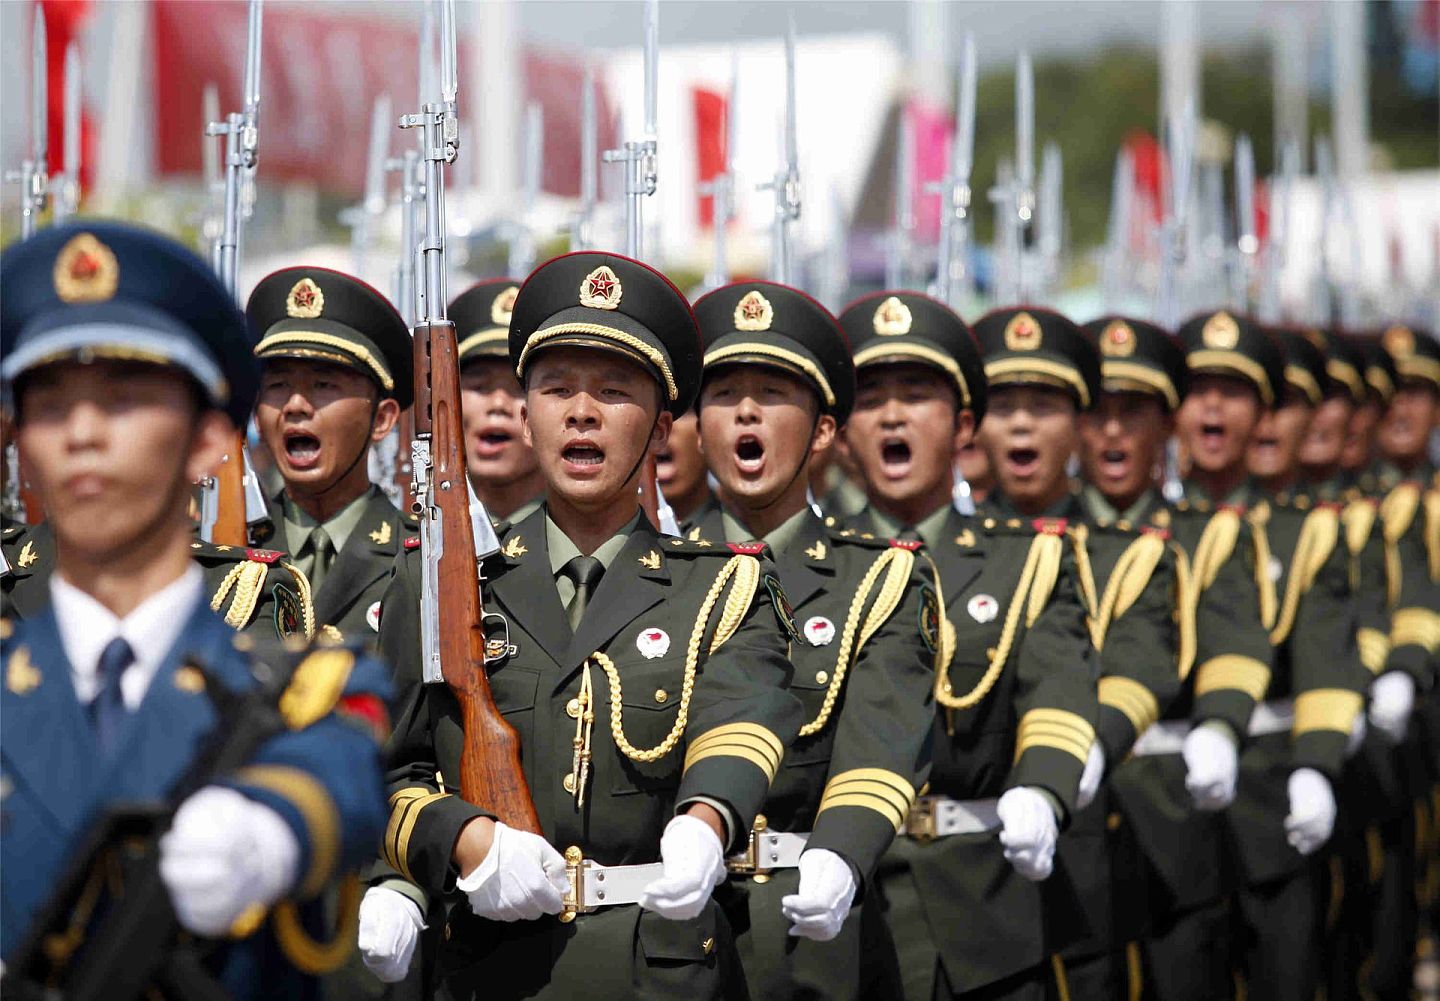 2022年1月初，北京任命武警部队副参谋长彭京堂少将为驻香港部队司令员，引发关注。图为2015年7月1日，香港回归18周年，驻港解放军举行庆祝活动。 (PLA)